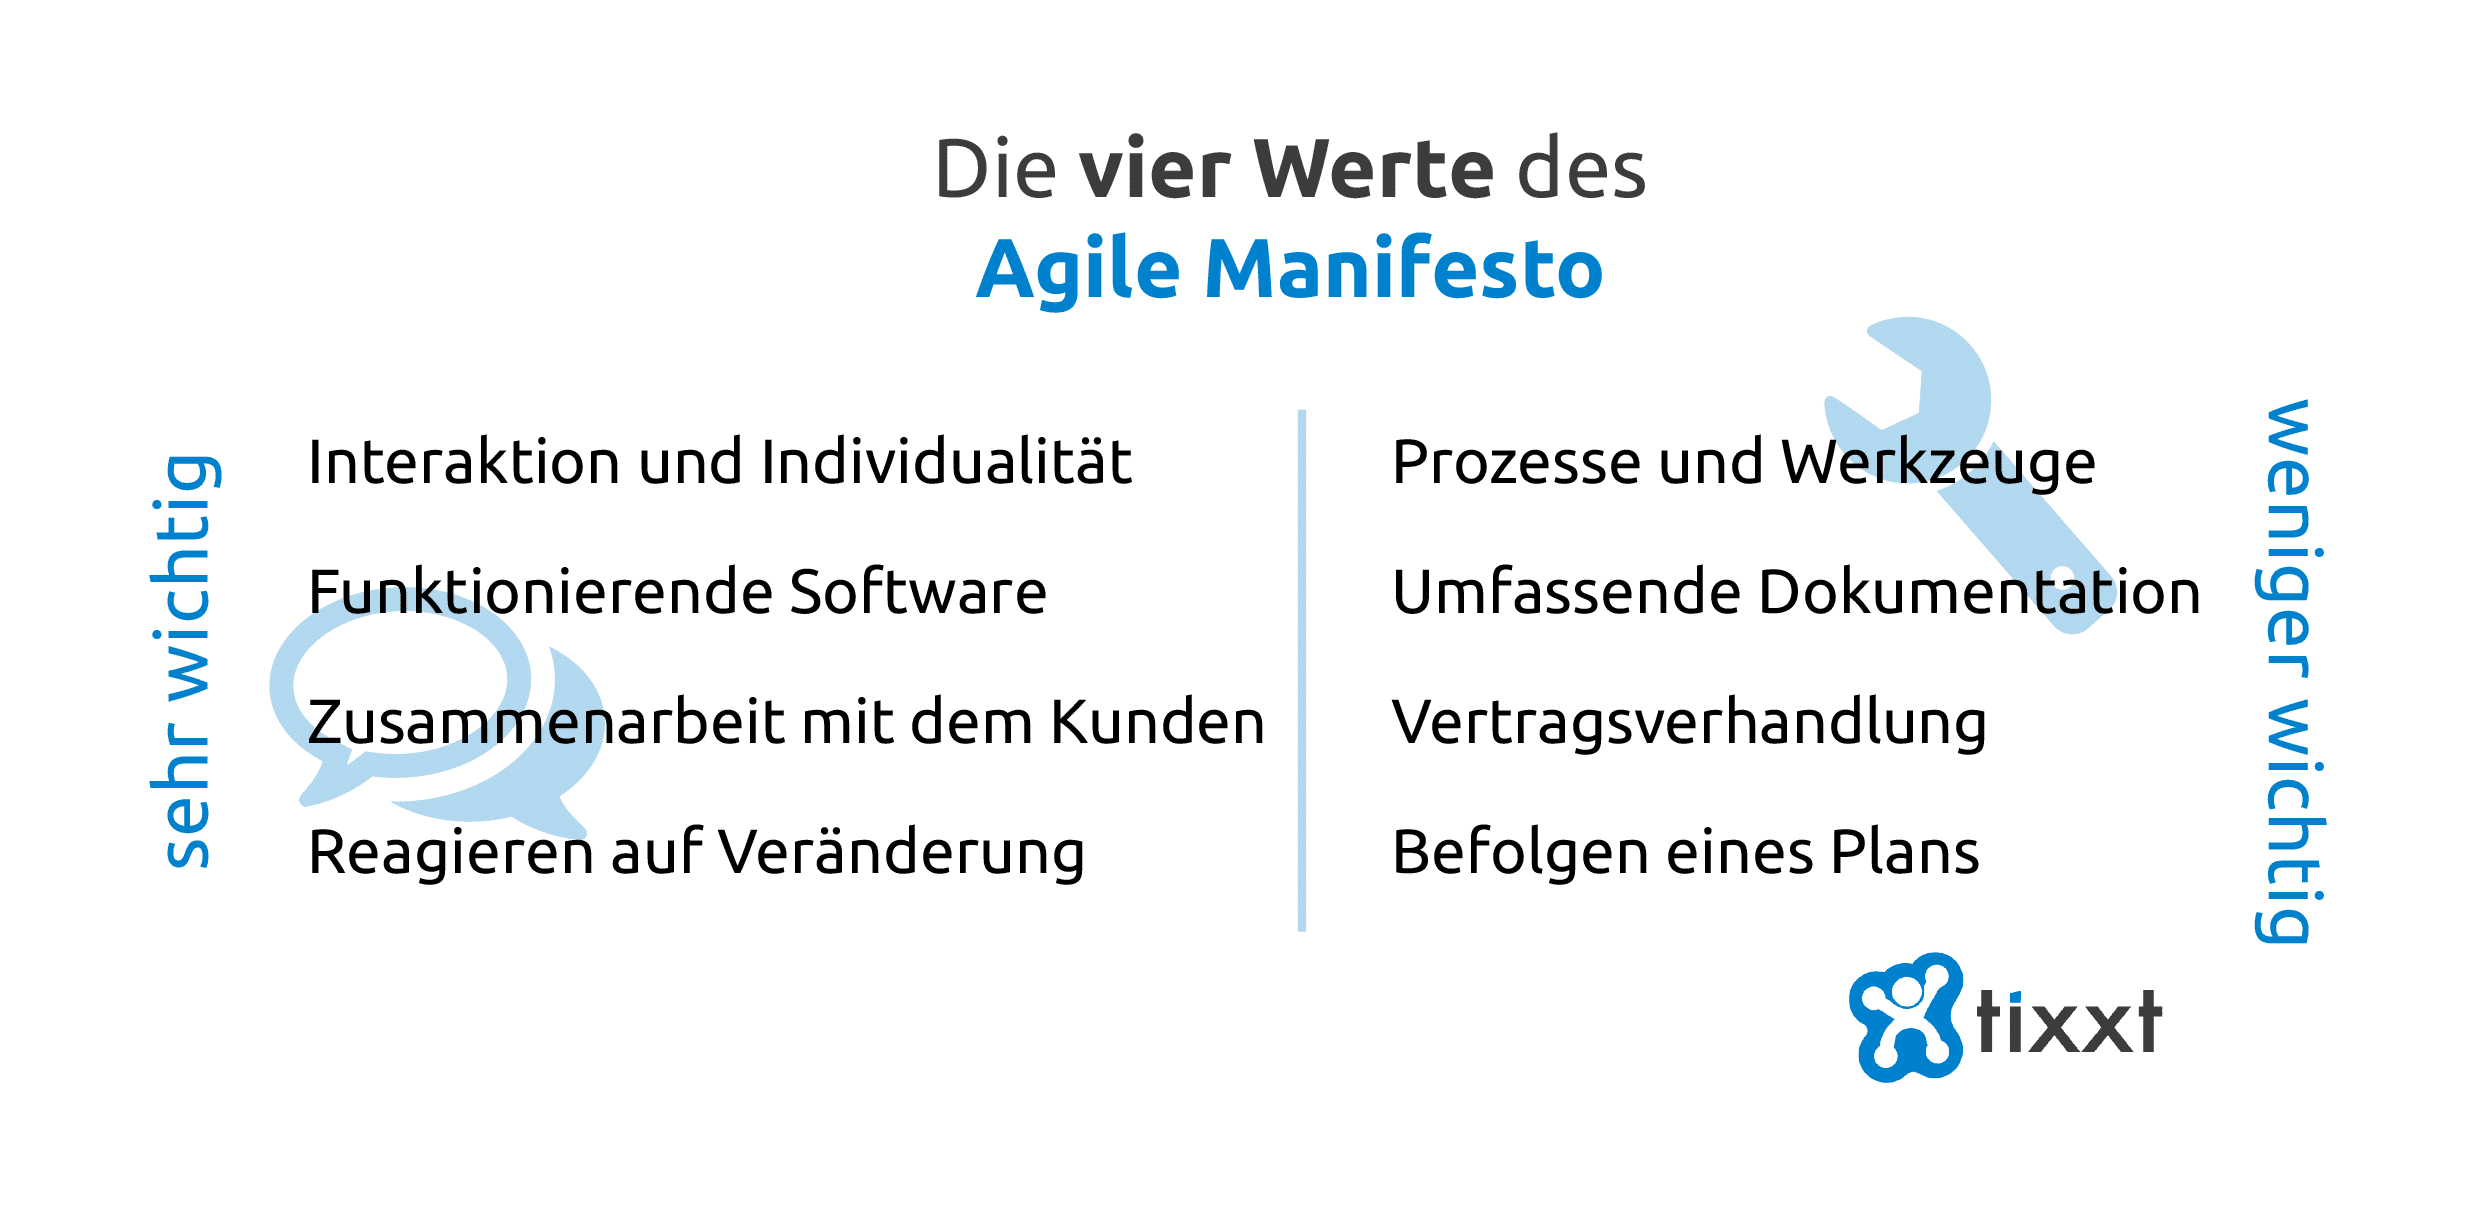 Die vier Werte des Agile Manifesto